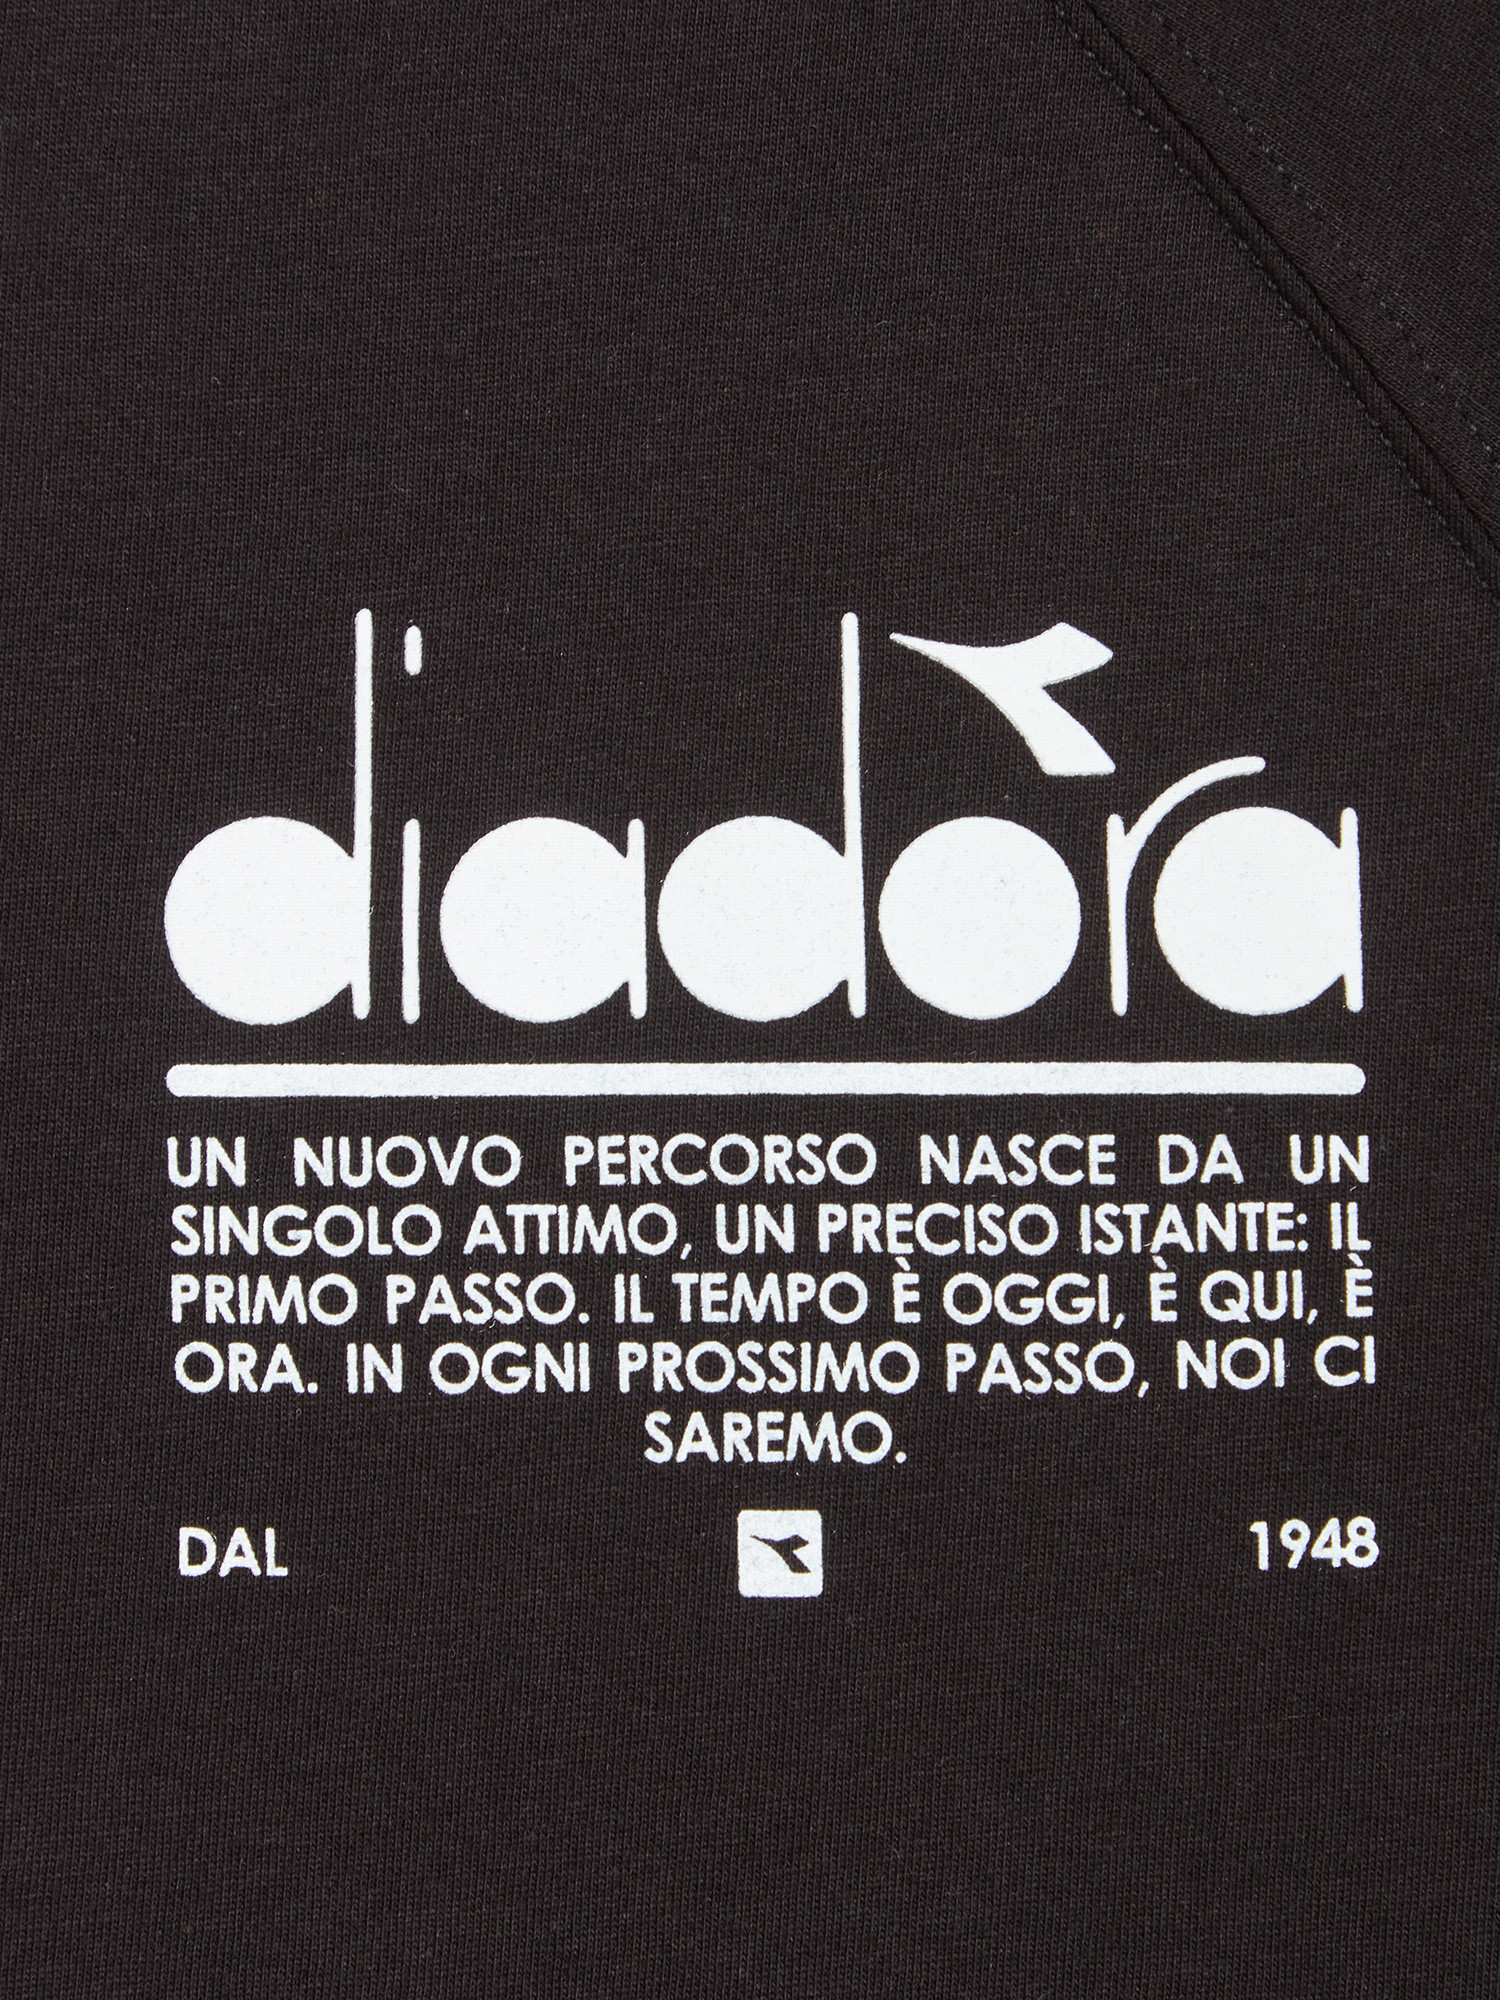 Diadora - Manifesto cotton T-shirt, Black, large image number 1